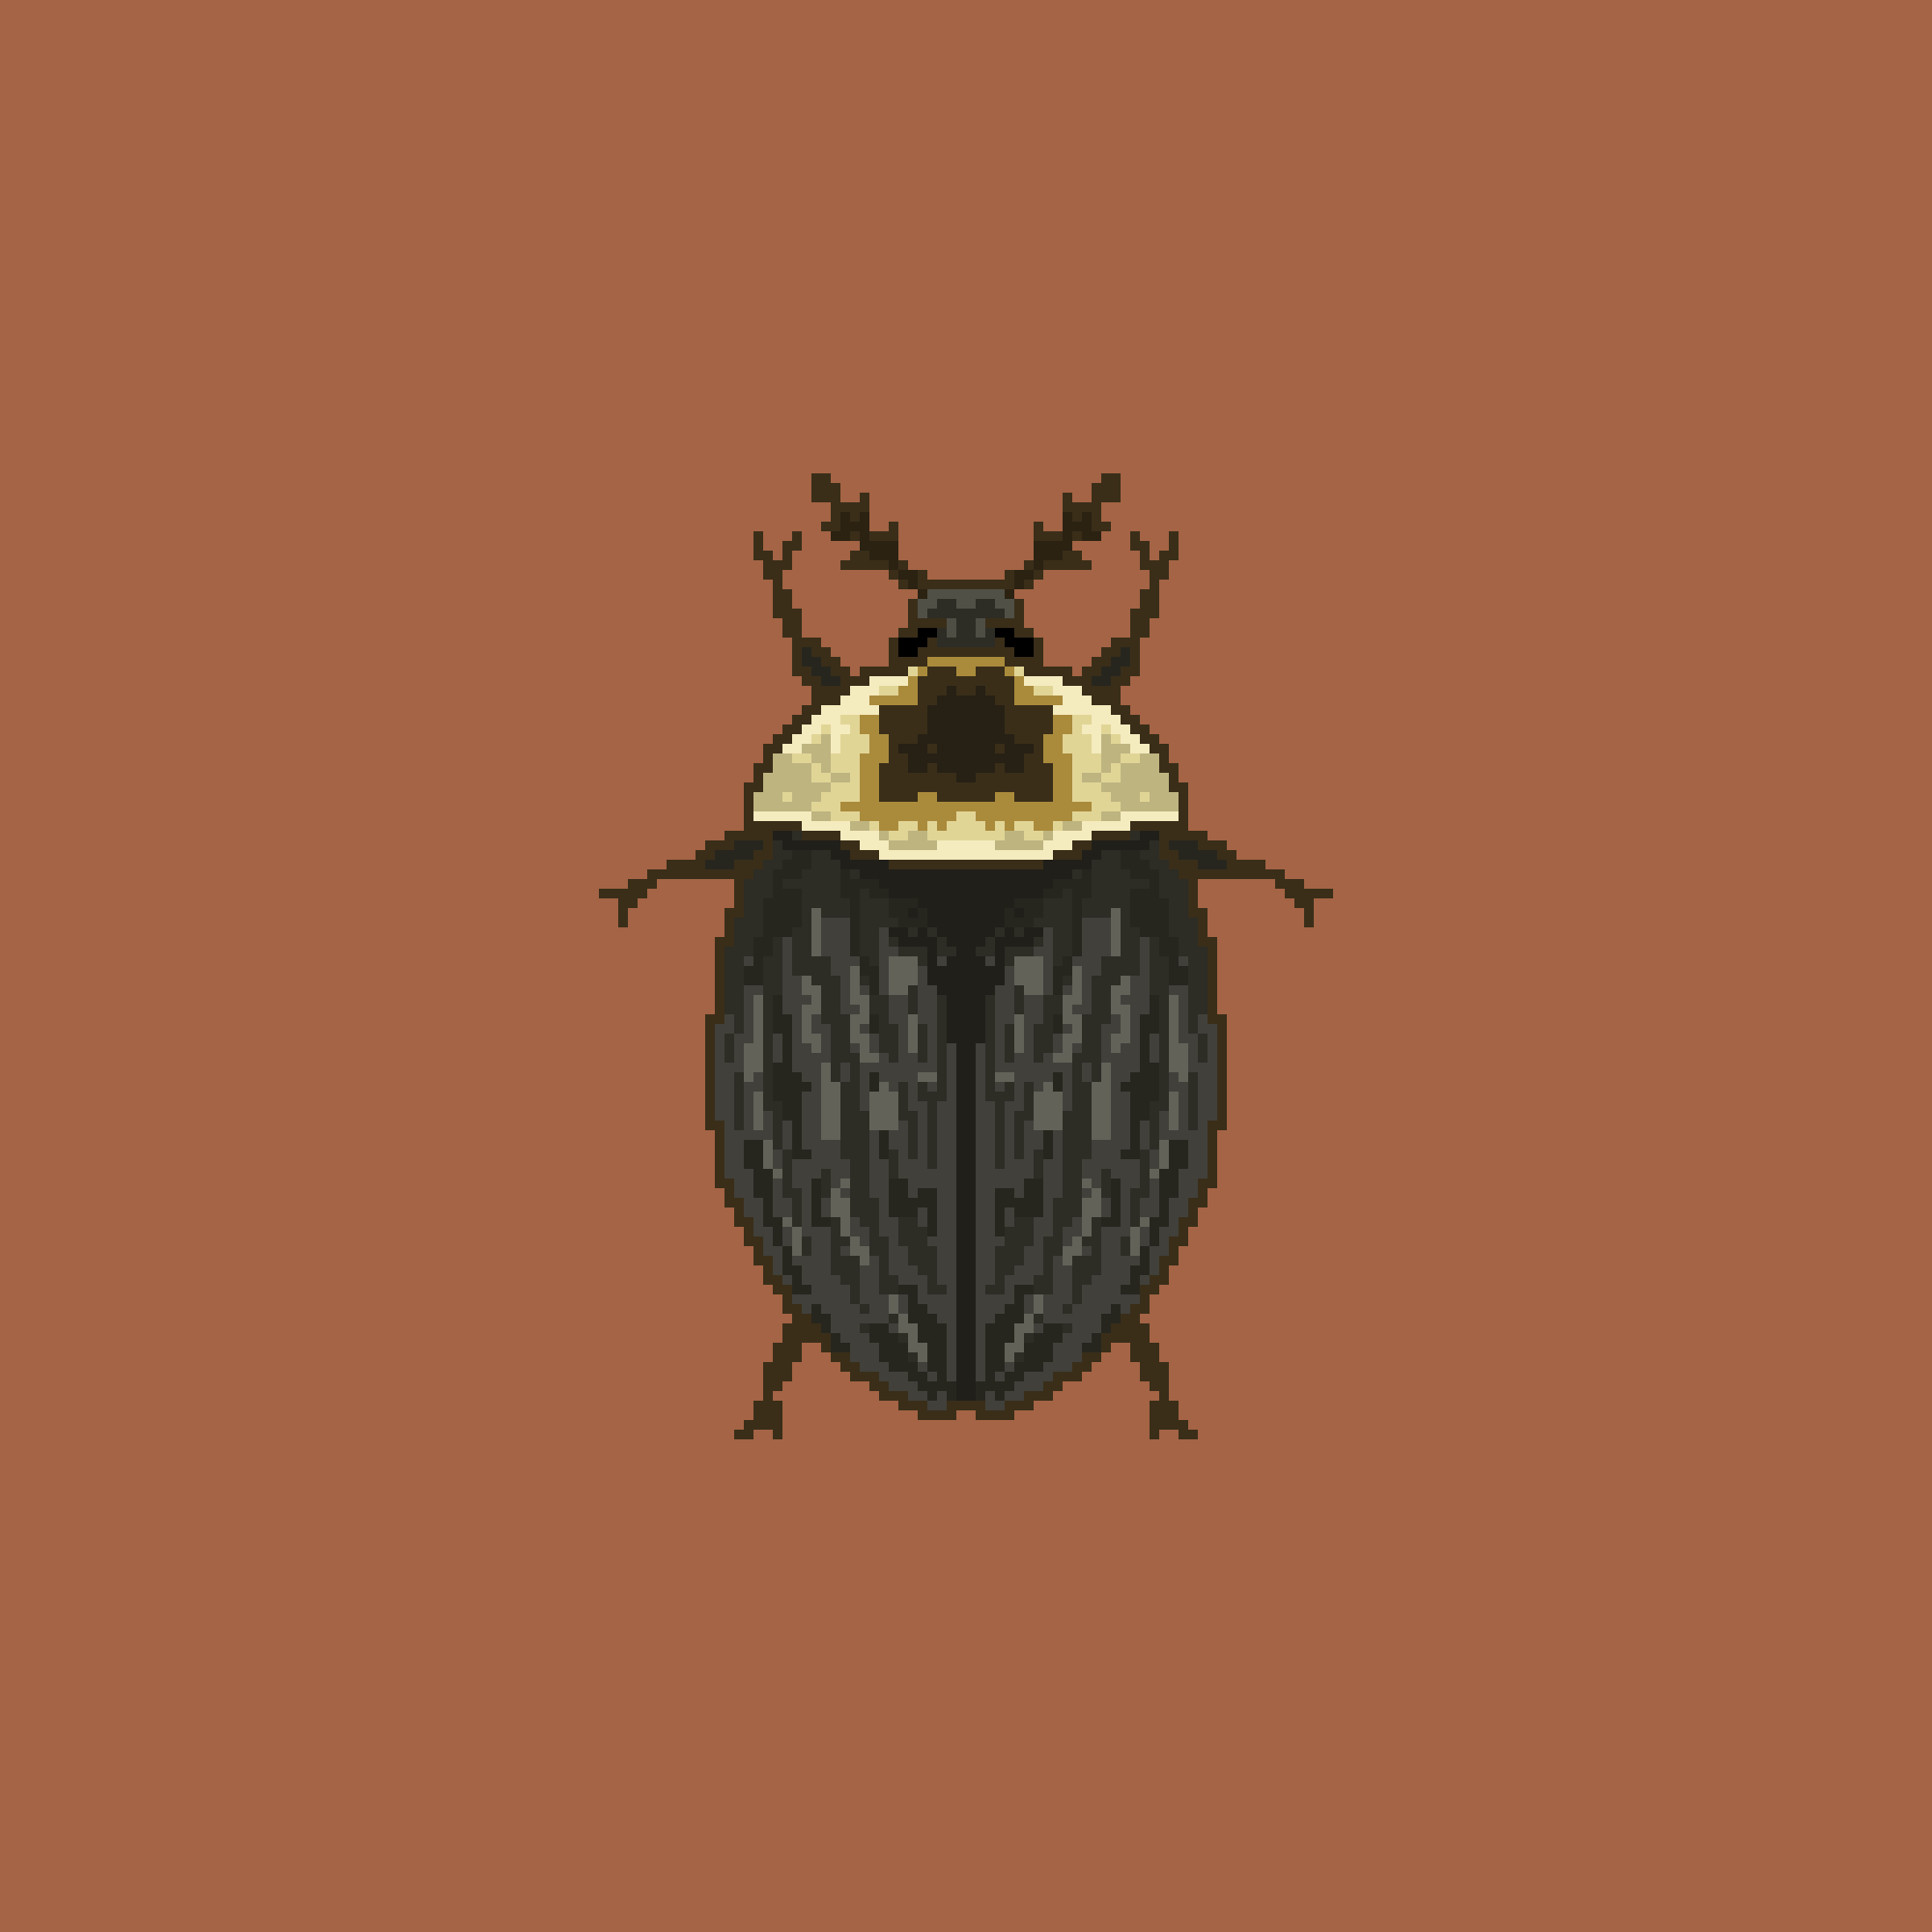 A Boring Beetle